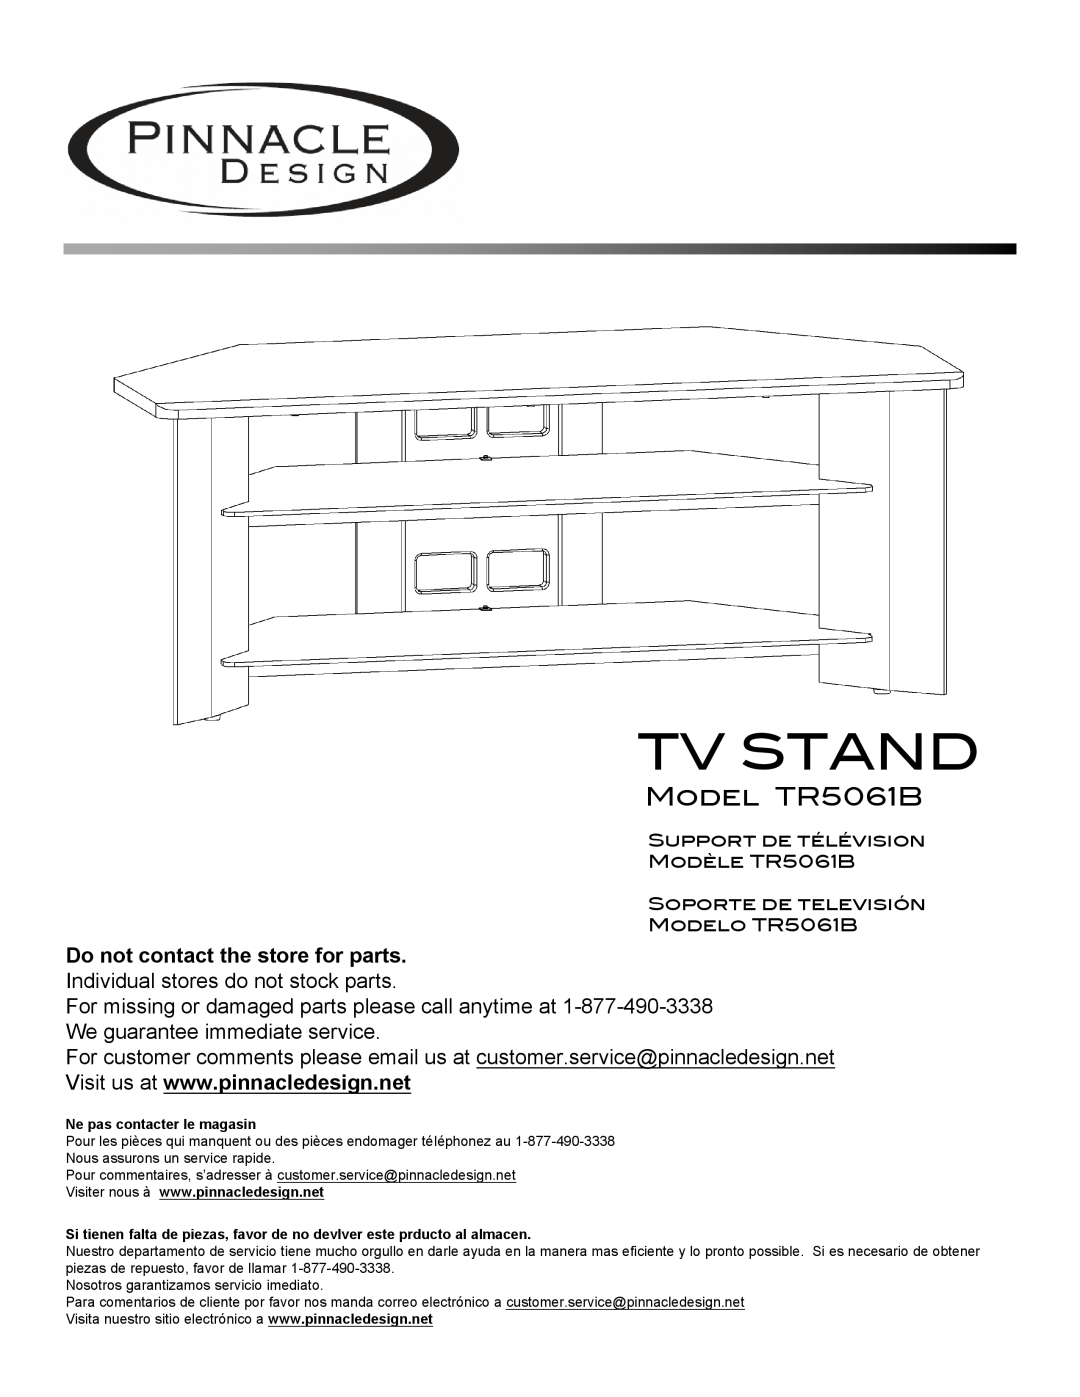 Pinnacle Design manual Model TR5061B, Tv Stand 